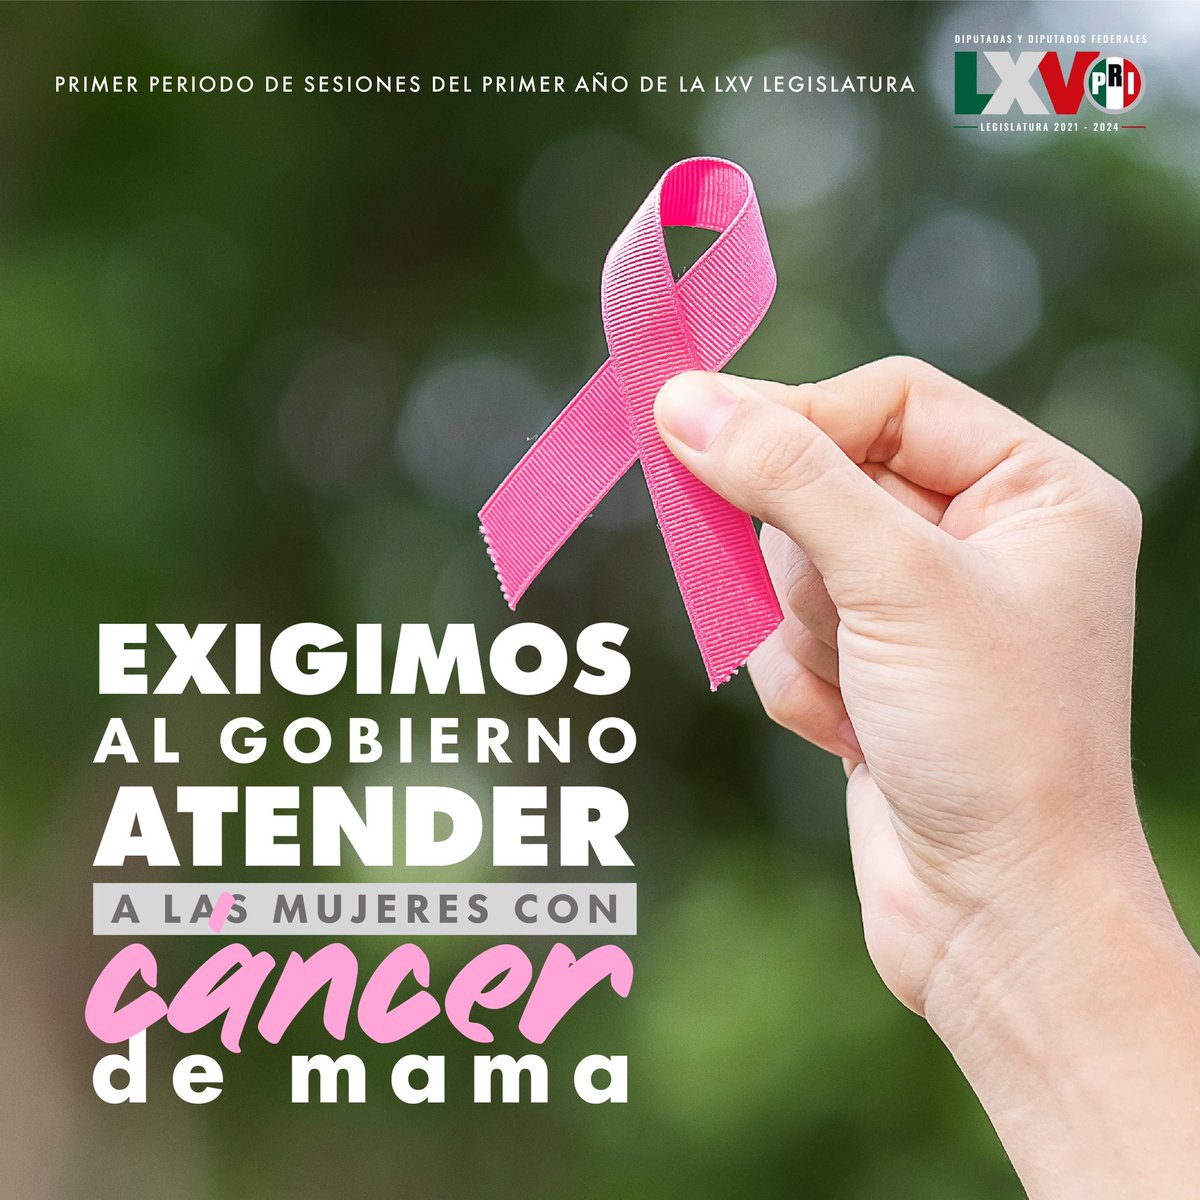 Junto a la sociedad civil organizada hemos alzado la voz por las mujeres que padecen cáncer de mama y que no han recibido la atención debida.

¡Seguiremos defendiendo las causas de las y los mexicanos!

#ElCáncerEnLaAgenda